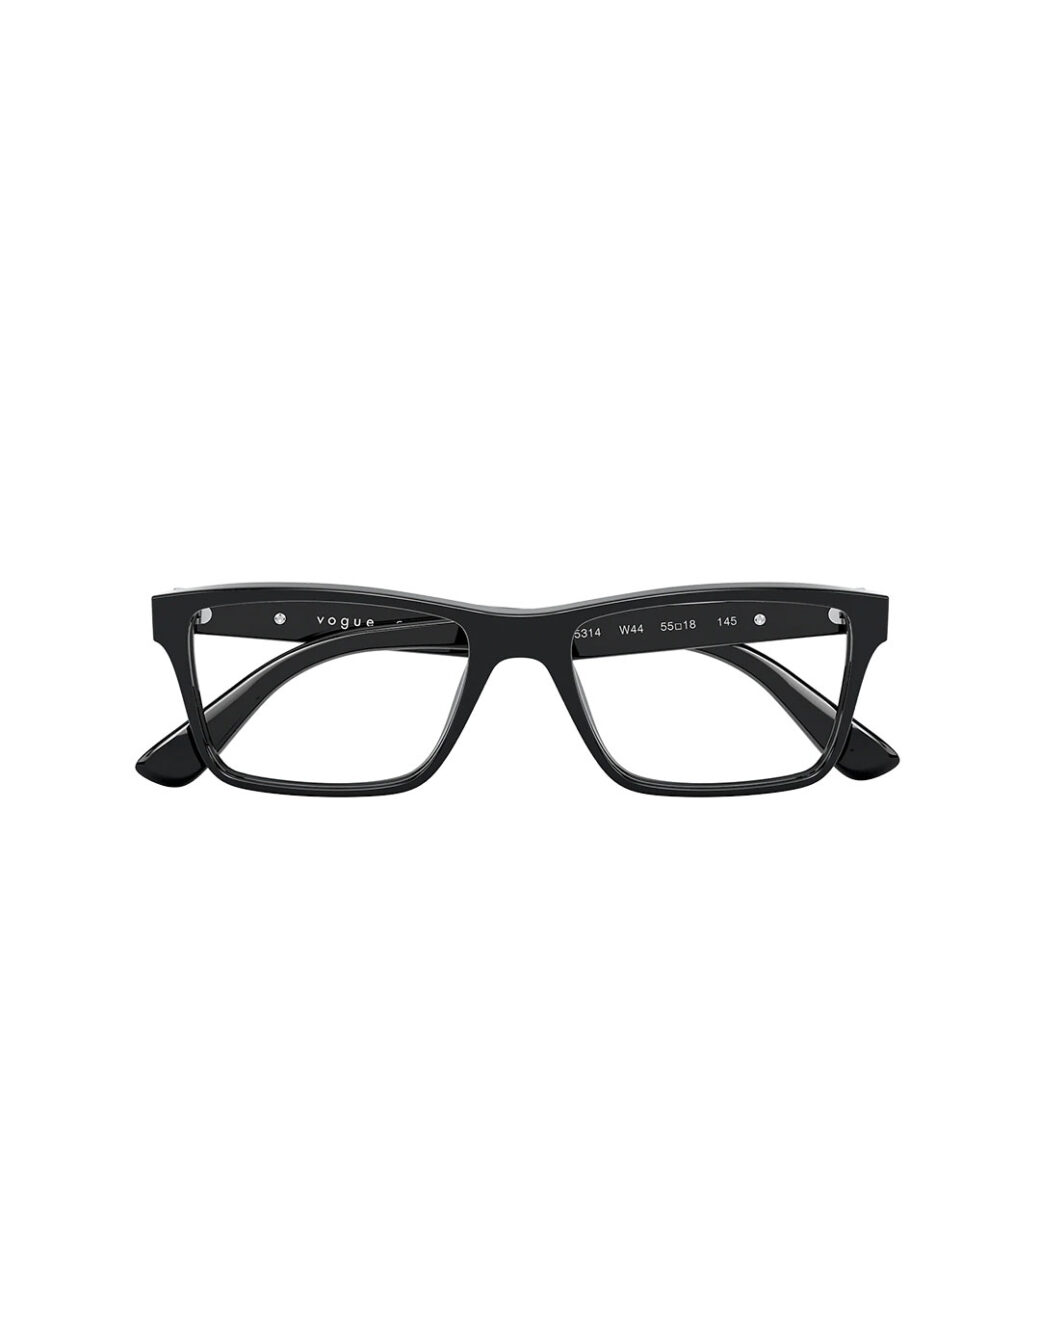 Vogue Eyewear - Shop Men Eyeglasses from UAE Optics - uaeoptics.com